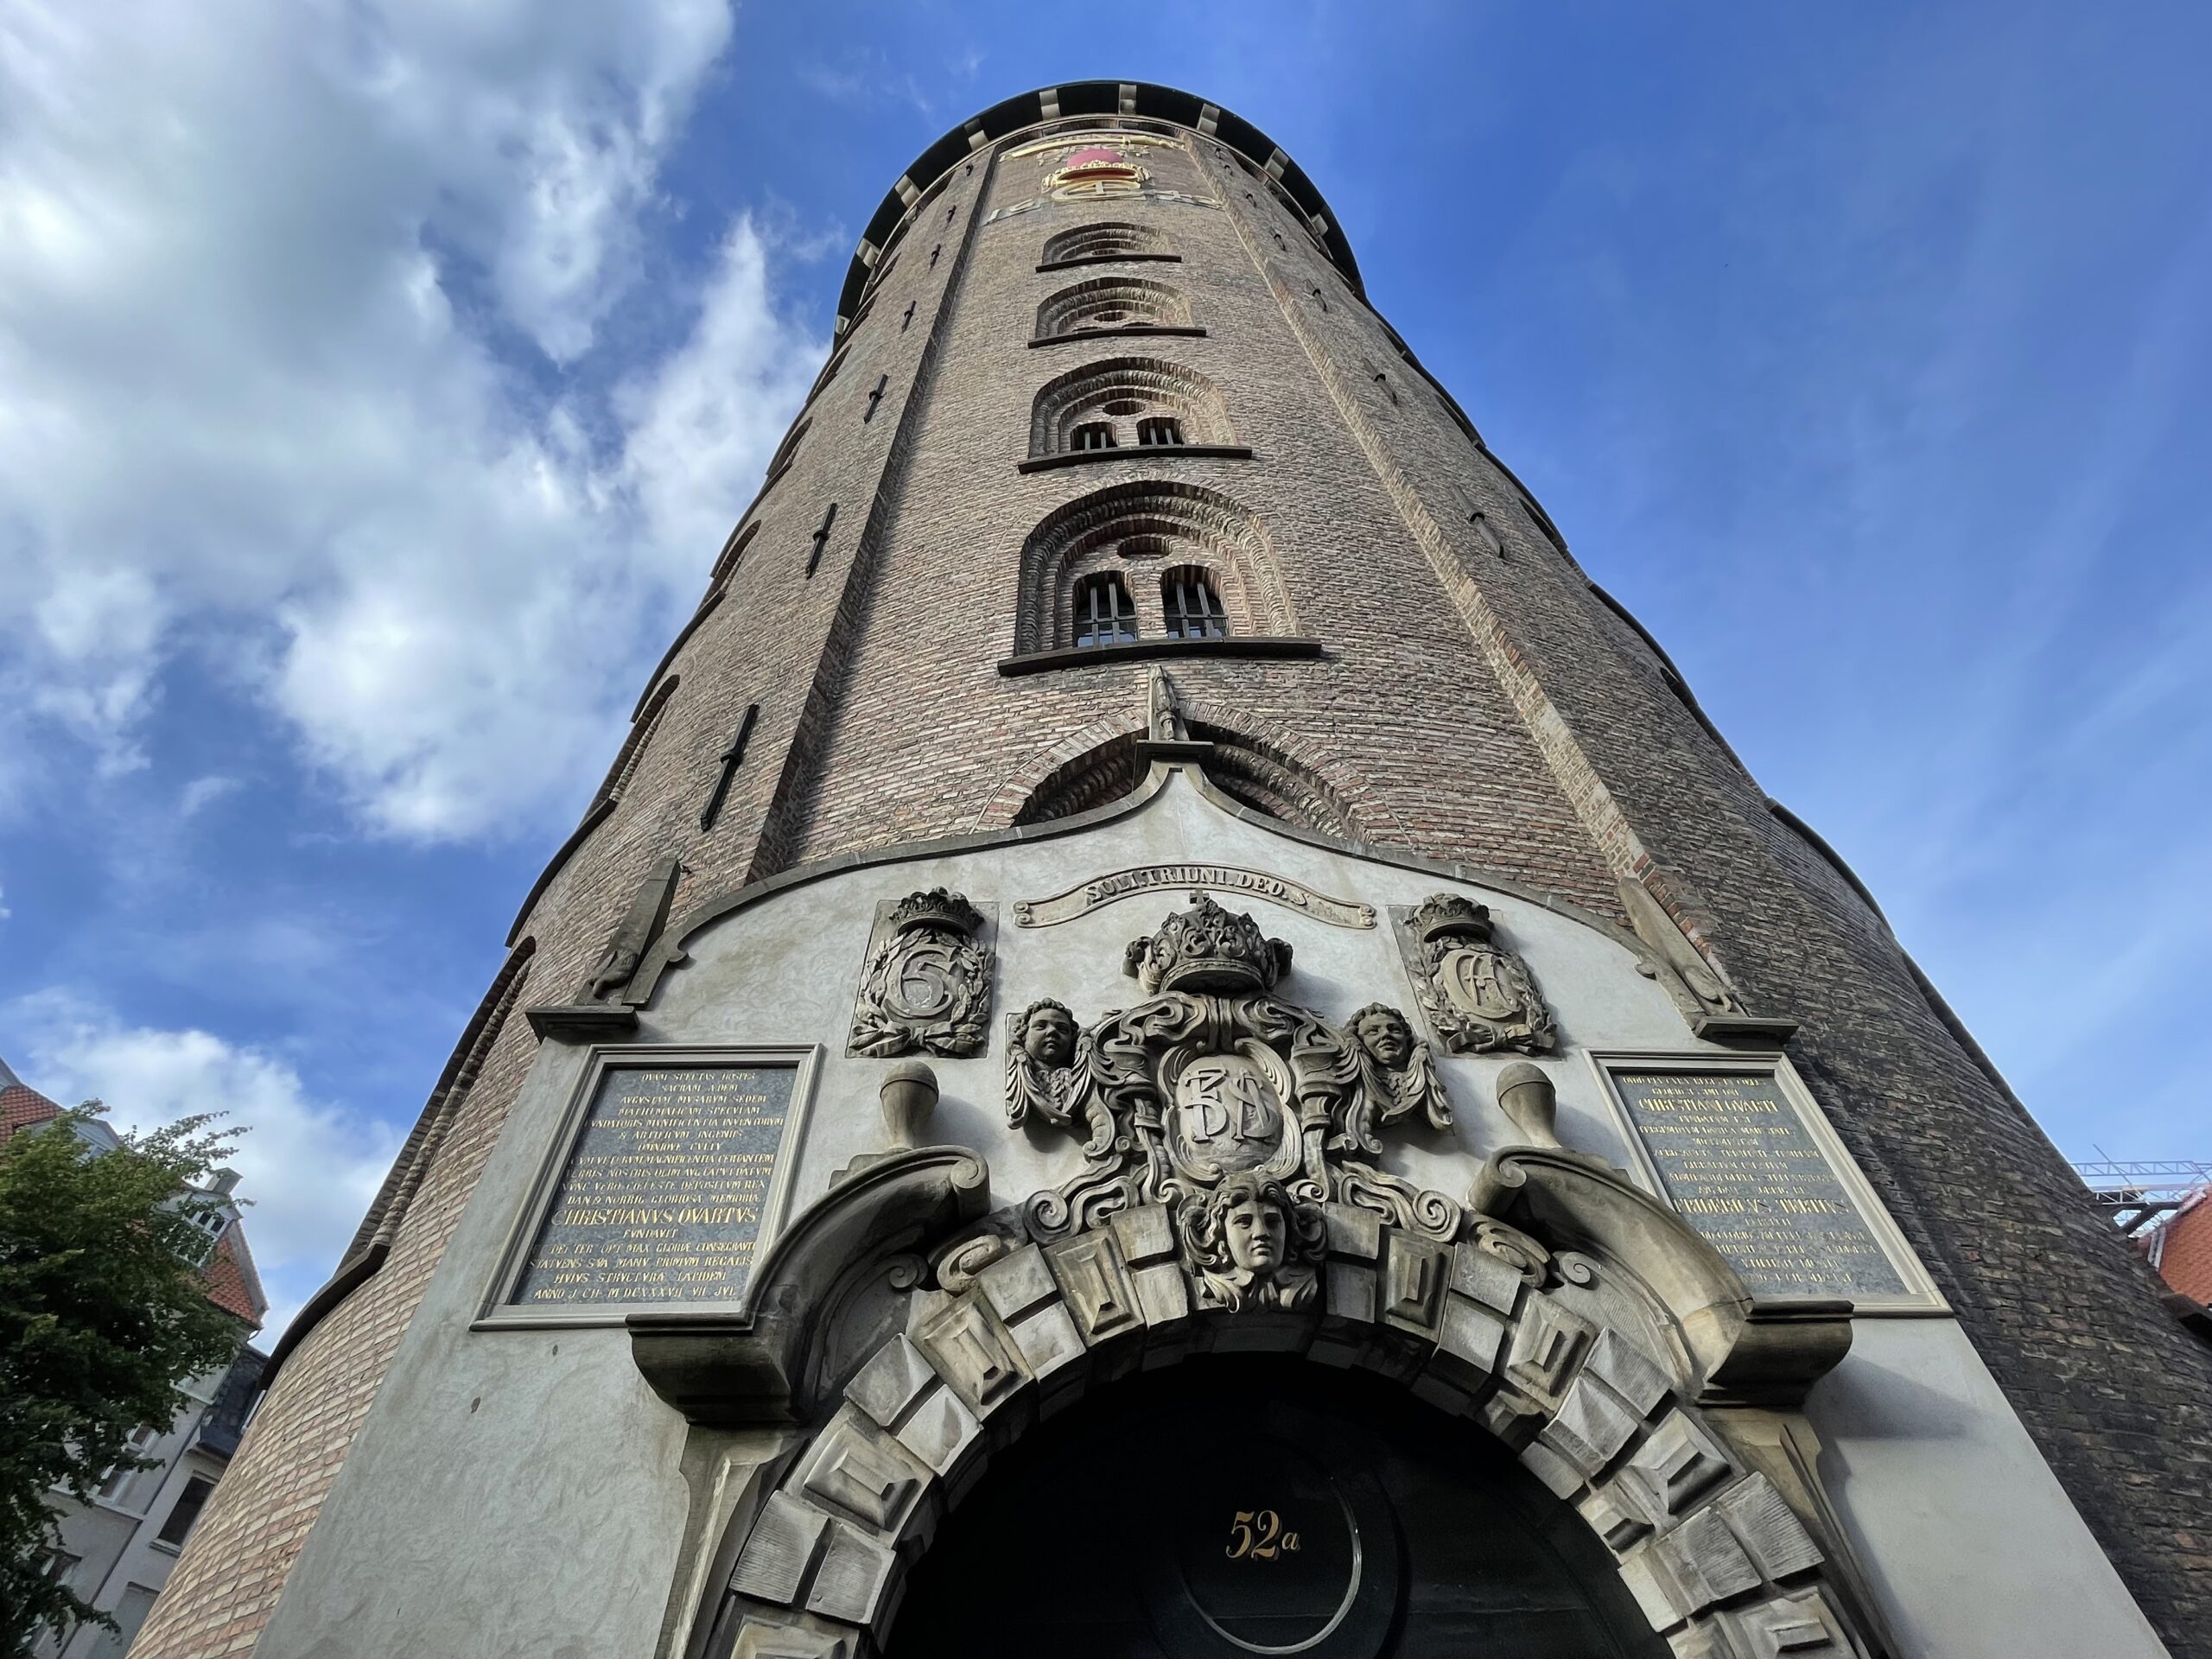 Okrągła Wieża jest bardzo popularna wśród turystów